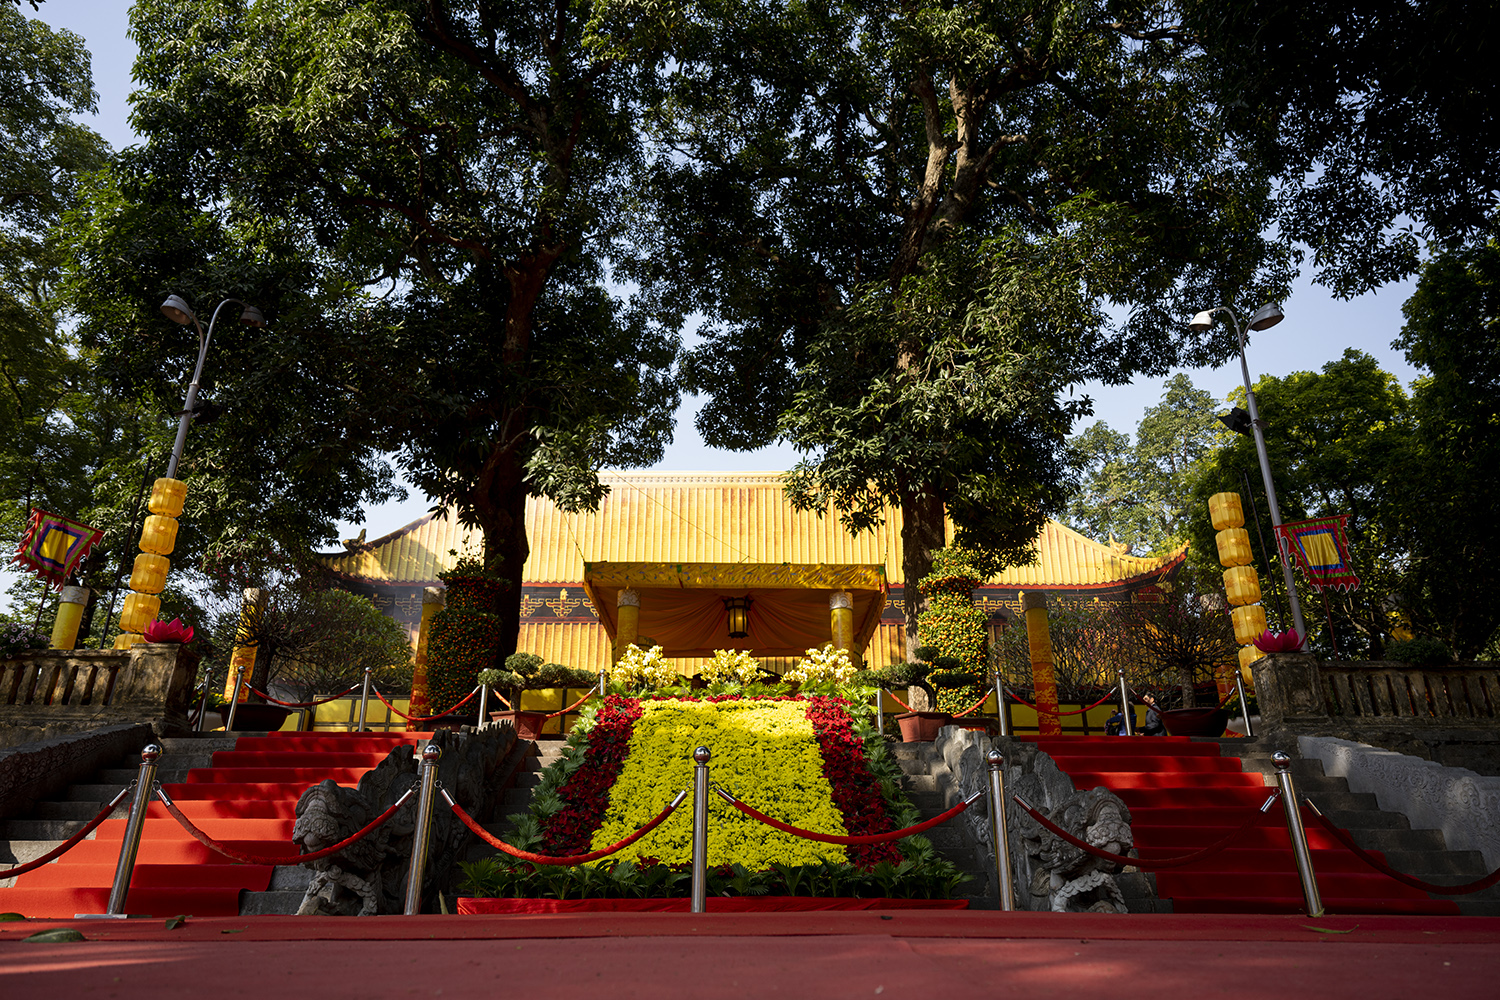 Mới đây Phó Thủ tướng Trần Hồng Hà đã ký Quyết định số 41/QĐ-TTg ngày 30/1/2023 công nhận 27 bảo vật quốc gia (đợt 11, năm 2022), trong đó nổi bật có bộ thành bậc điện Kính Thiên thế kỷ XVII, hiện lưu giữ tại Trung tâm Bảo tồn Di sản Thăng Long - Hà Nội.